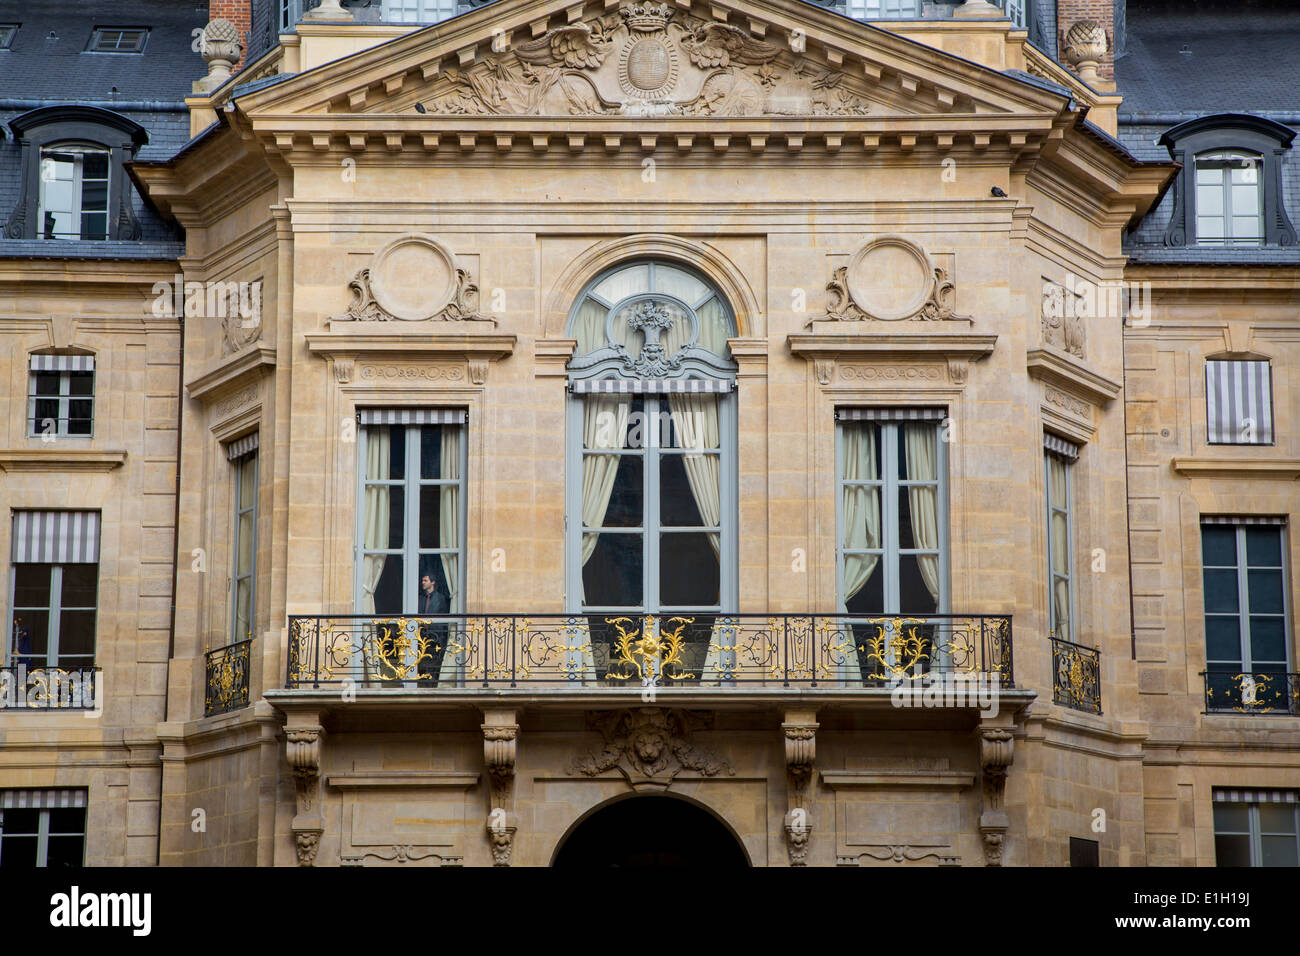 Mann aus dem Fenster des Ministeriums für Kultur und Kommunikation Gebäudes befestigt, Palais Royal, Paris Frankreich Stockfoto